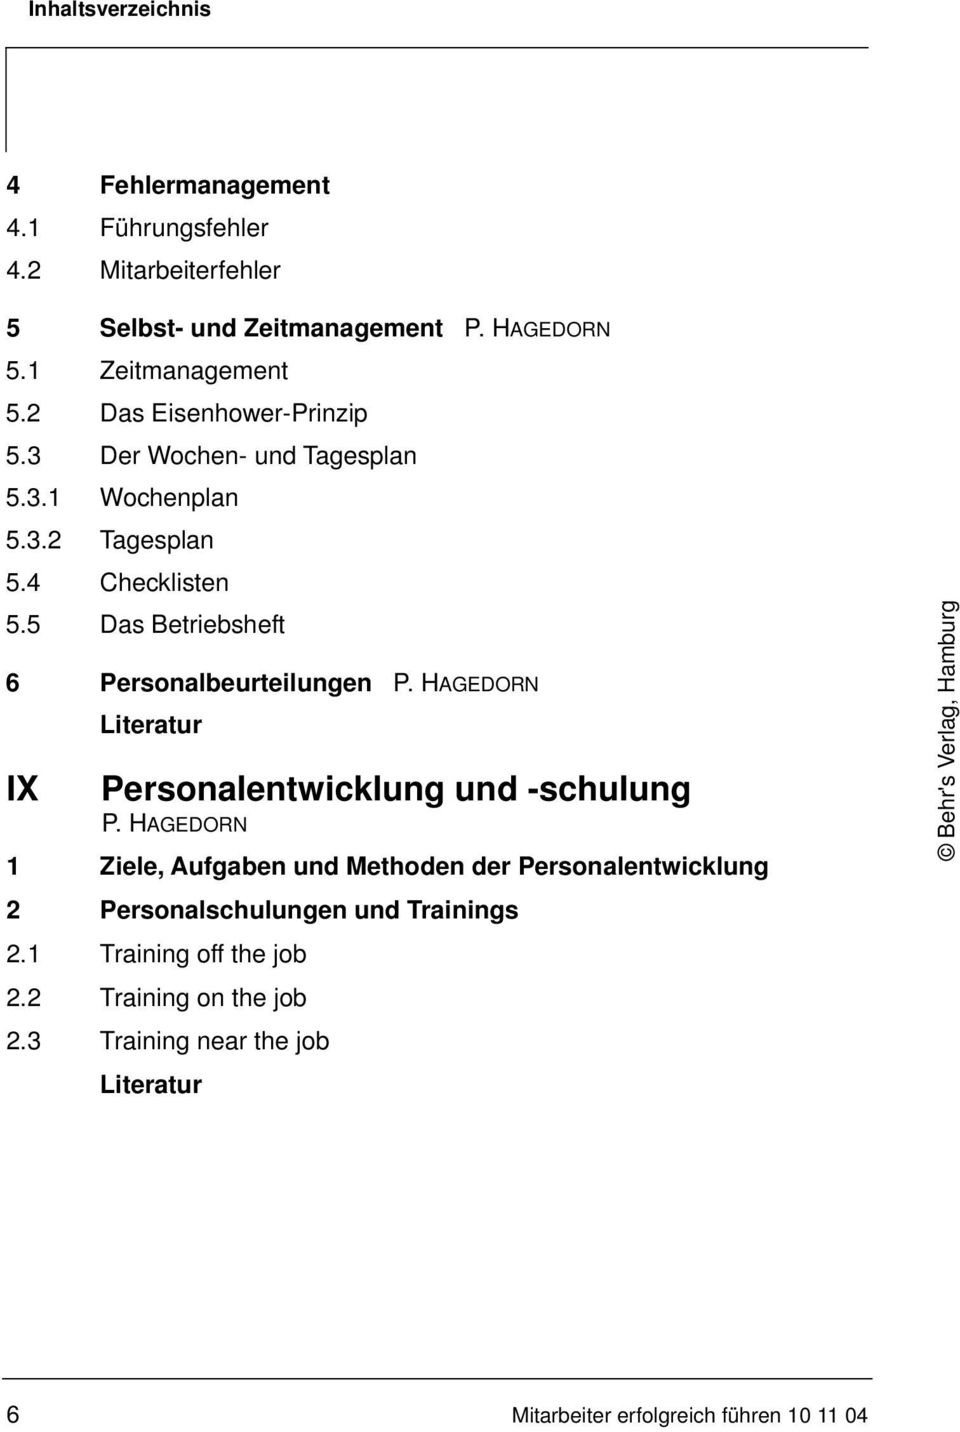 5 Das Betriebsheft 6 Personalbeurteilungen P. HAGEDORN IX Personalentwicklung und -schulung P.